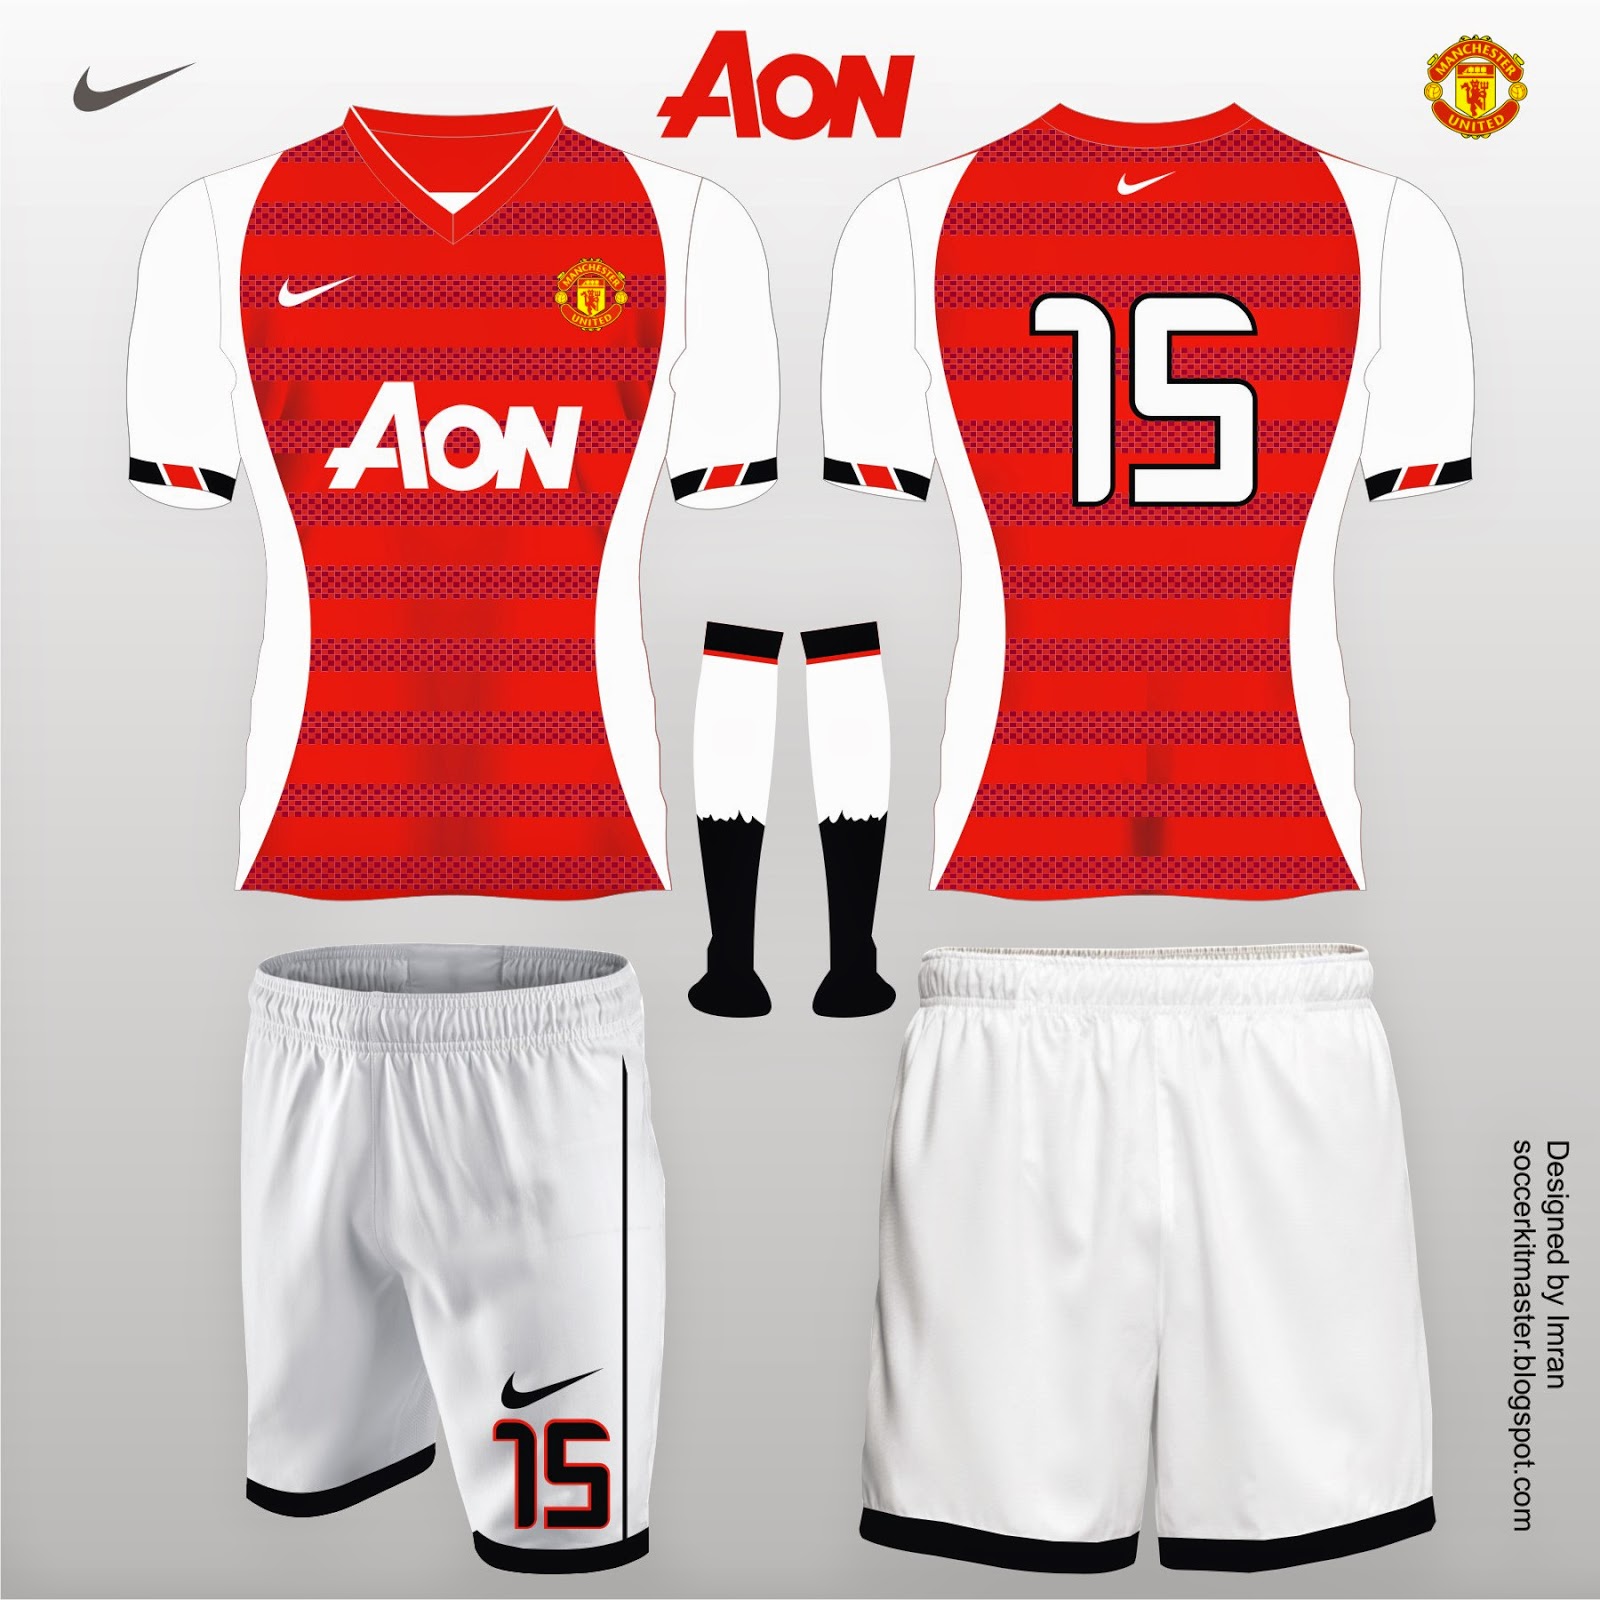 Football Kit Design Master: Manchester United Football Kit Designs